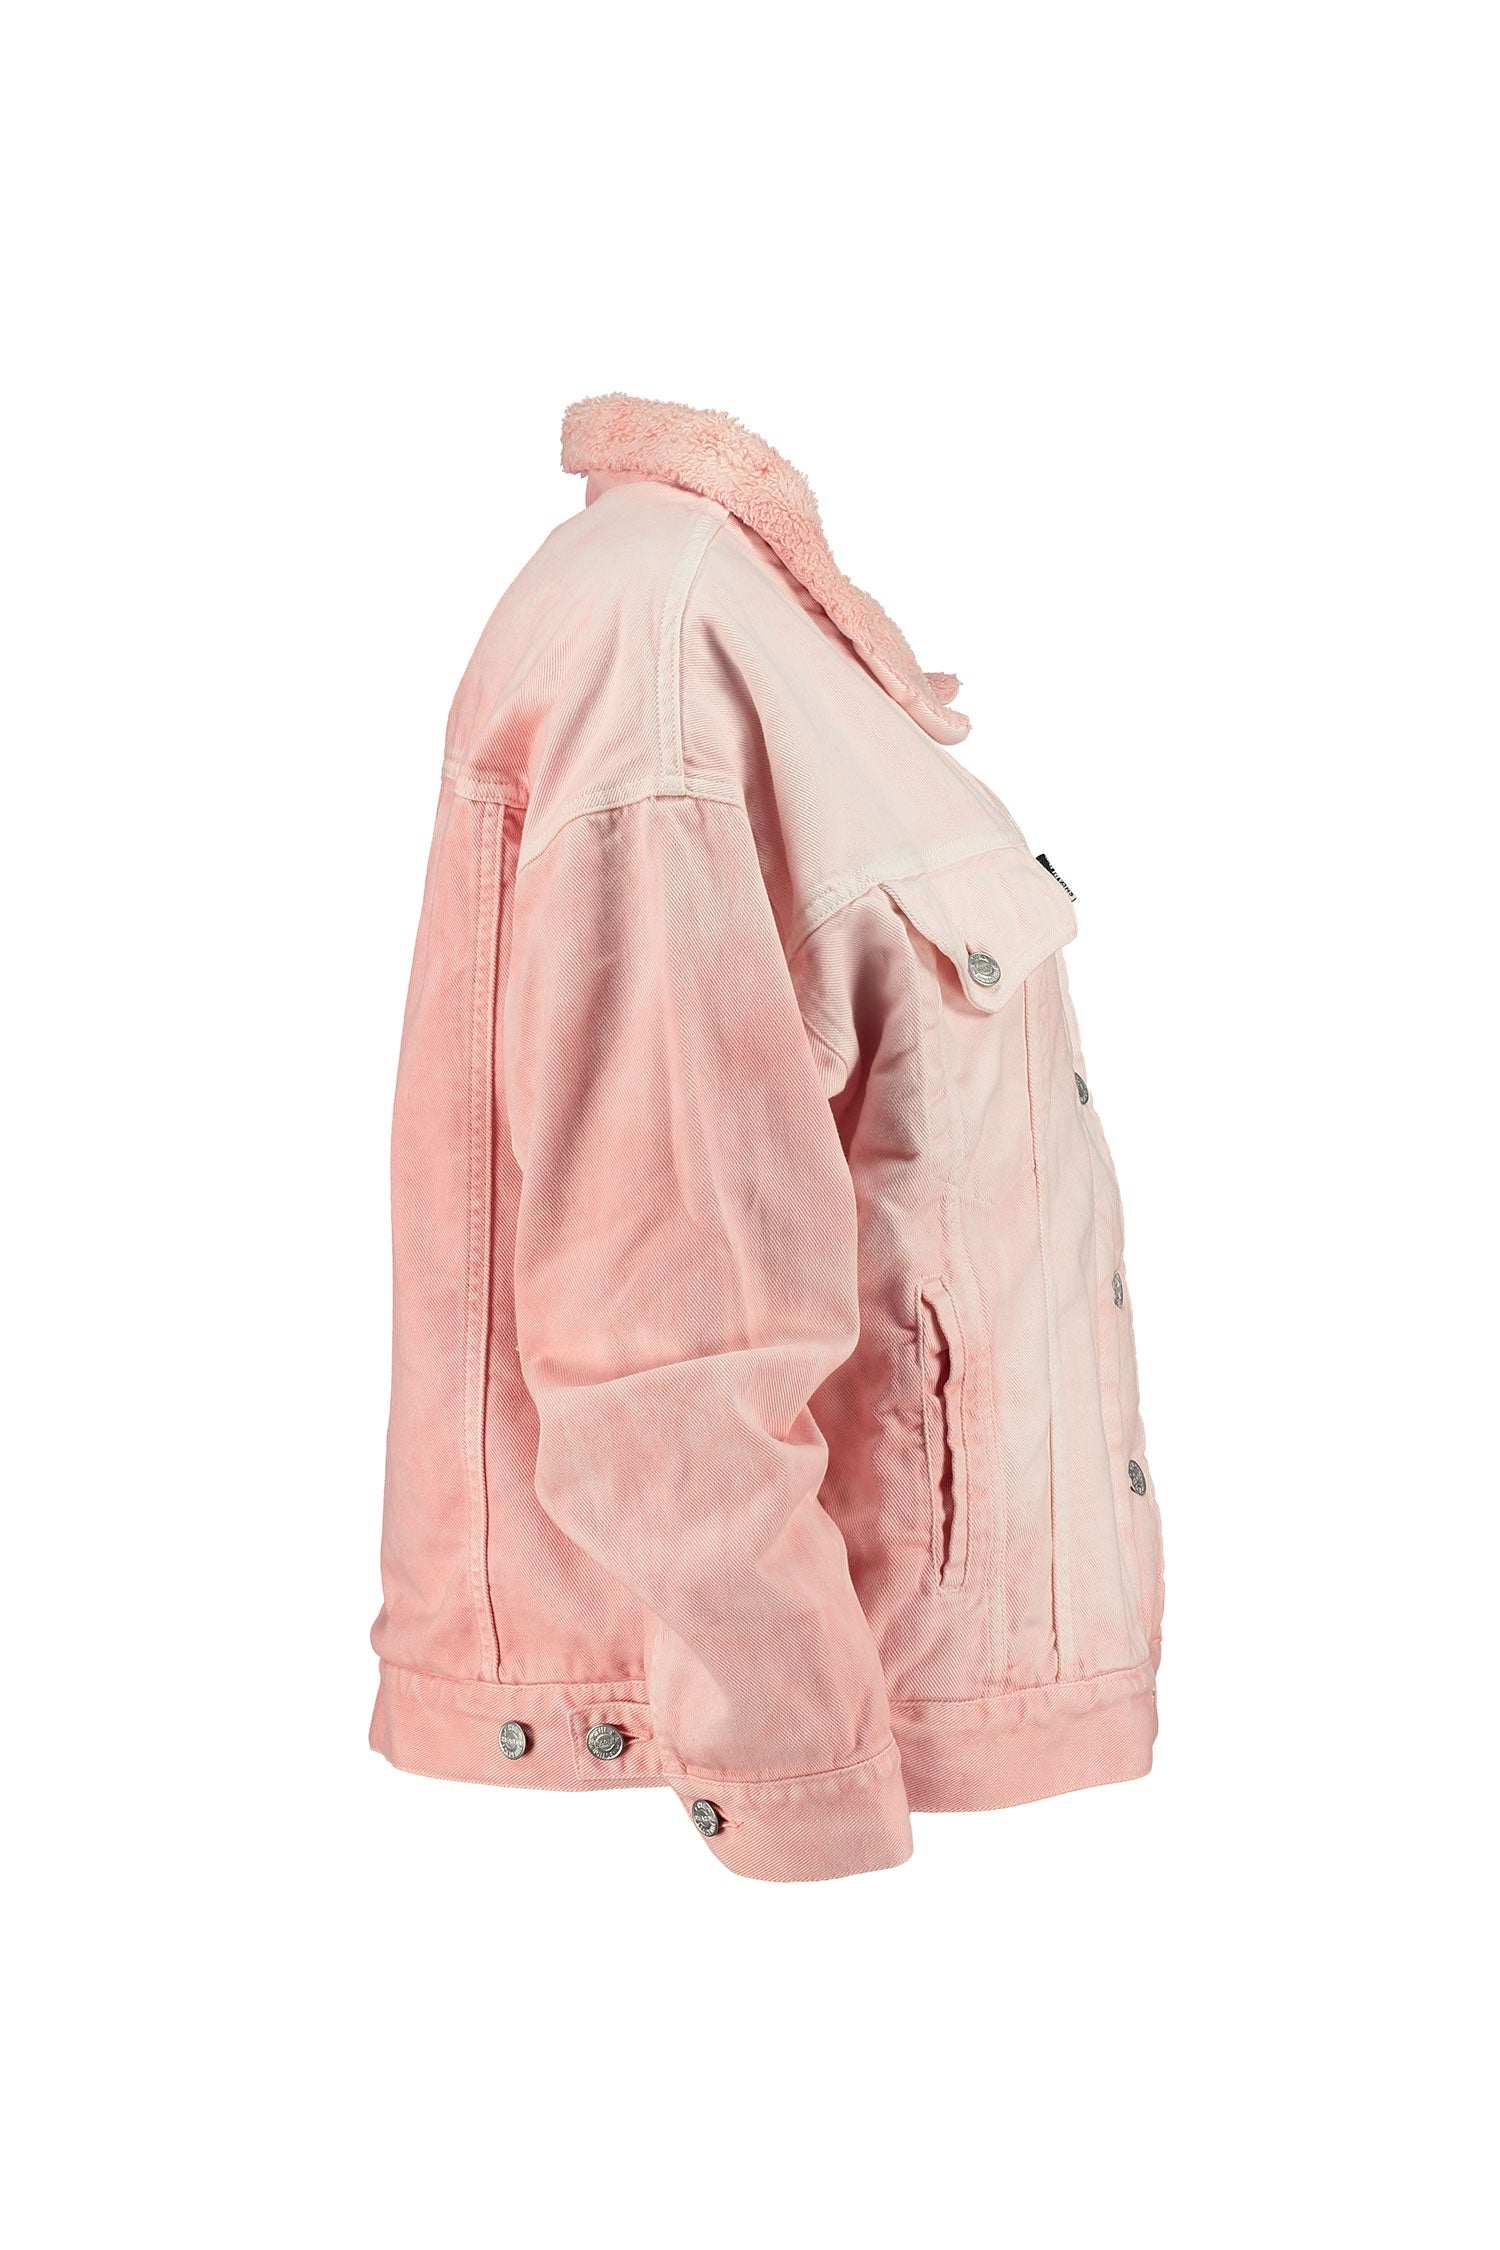 Posie Pink Acid Wash Denim Jacket